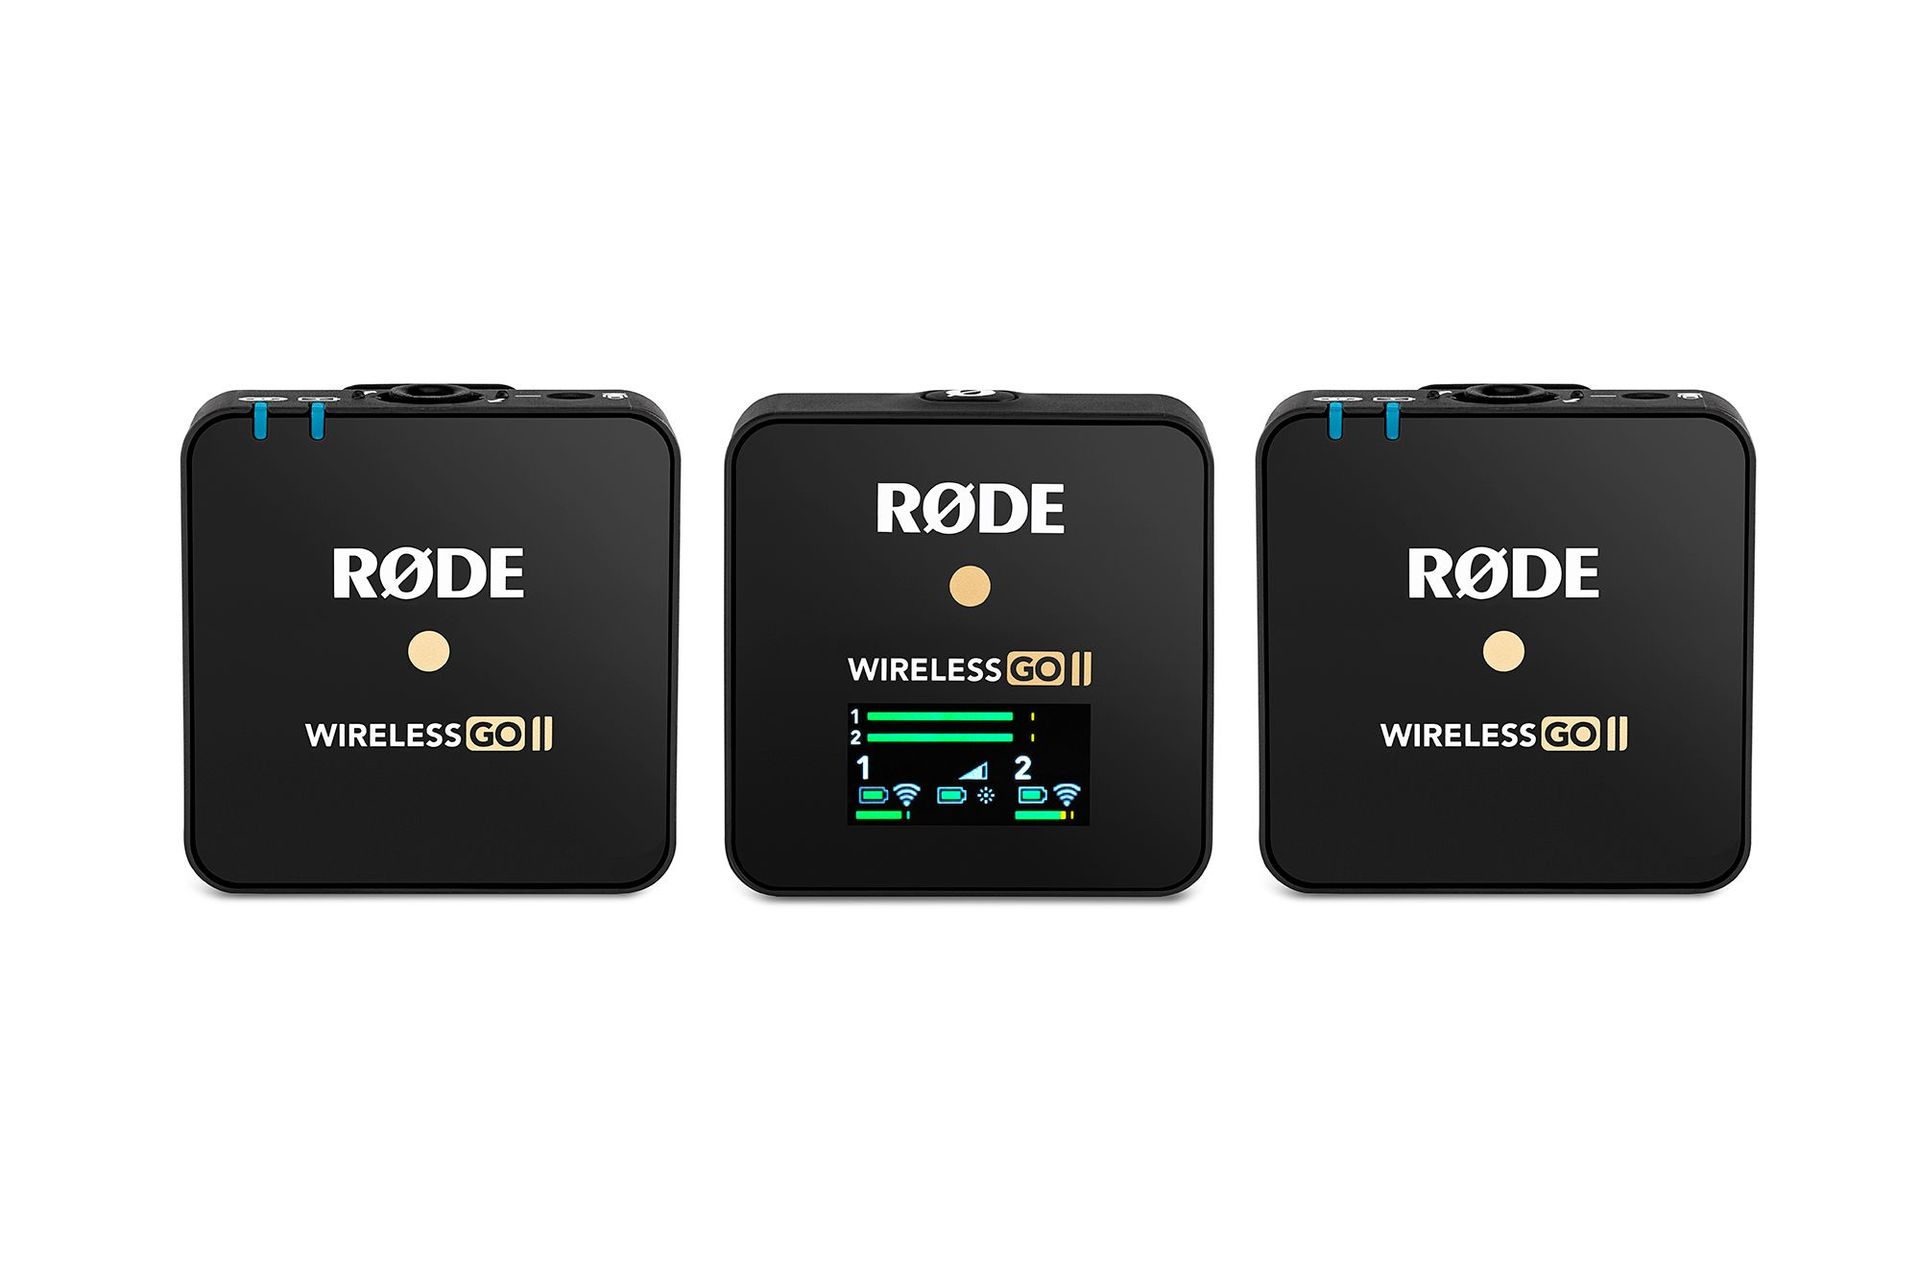 Rode Wireless GO ll Digitales 2-Kanal Funk Mikrofonsystem ideal für Interviews